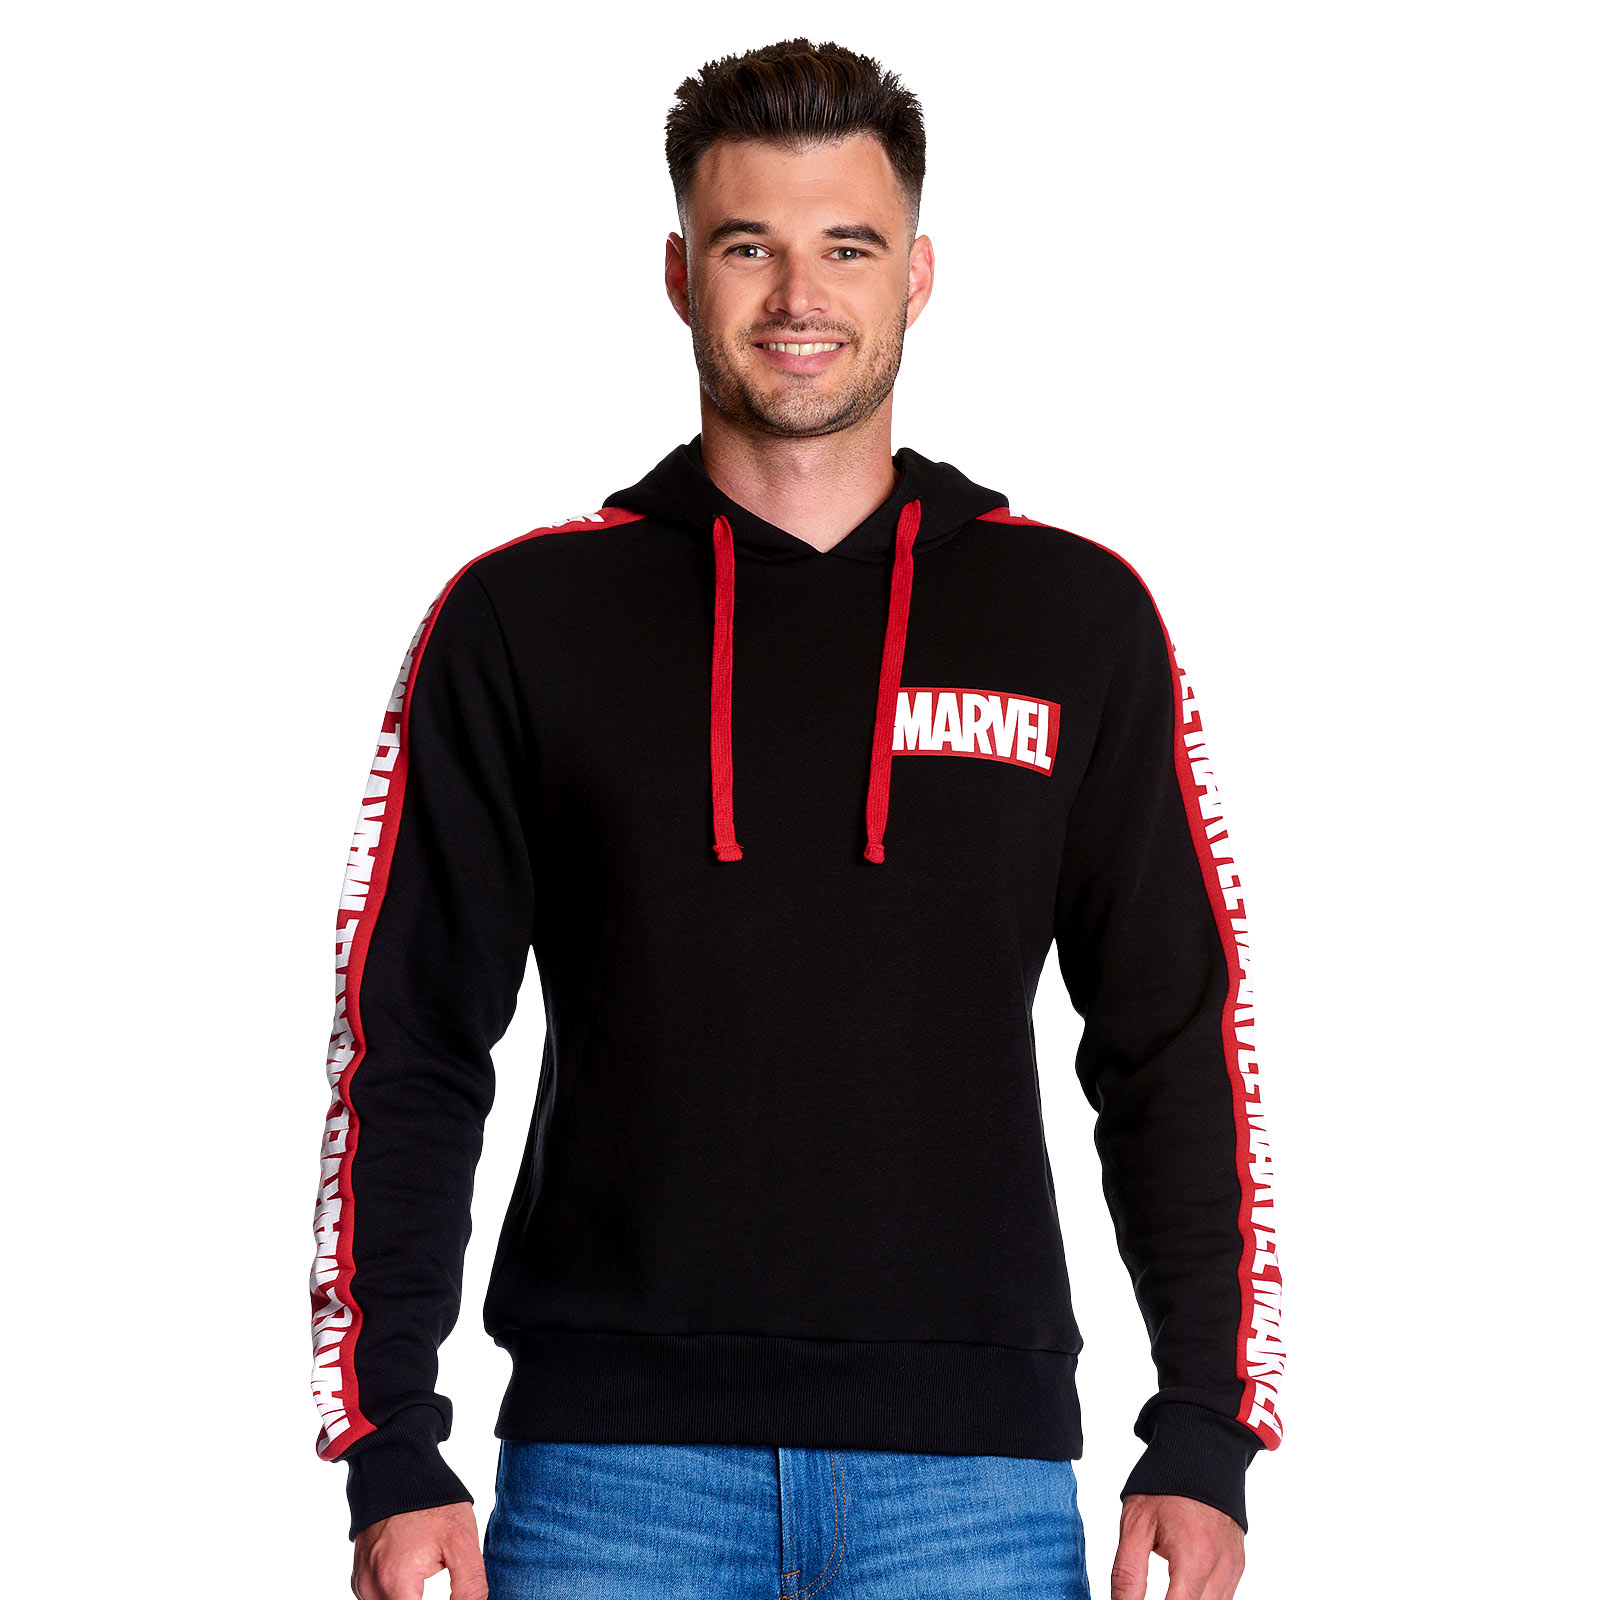 Marvel - Logo Hoodie with Sleeve Print Black